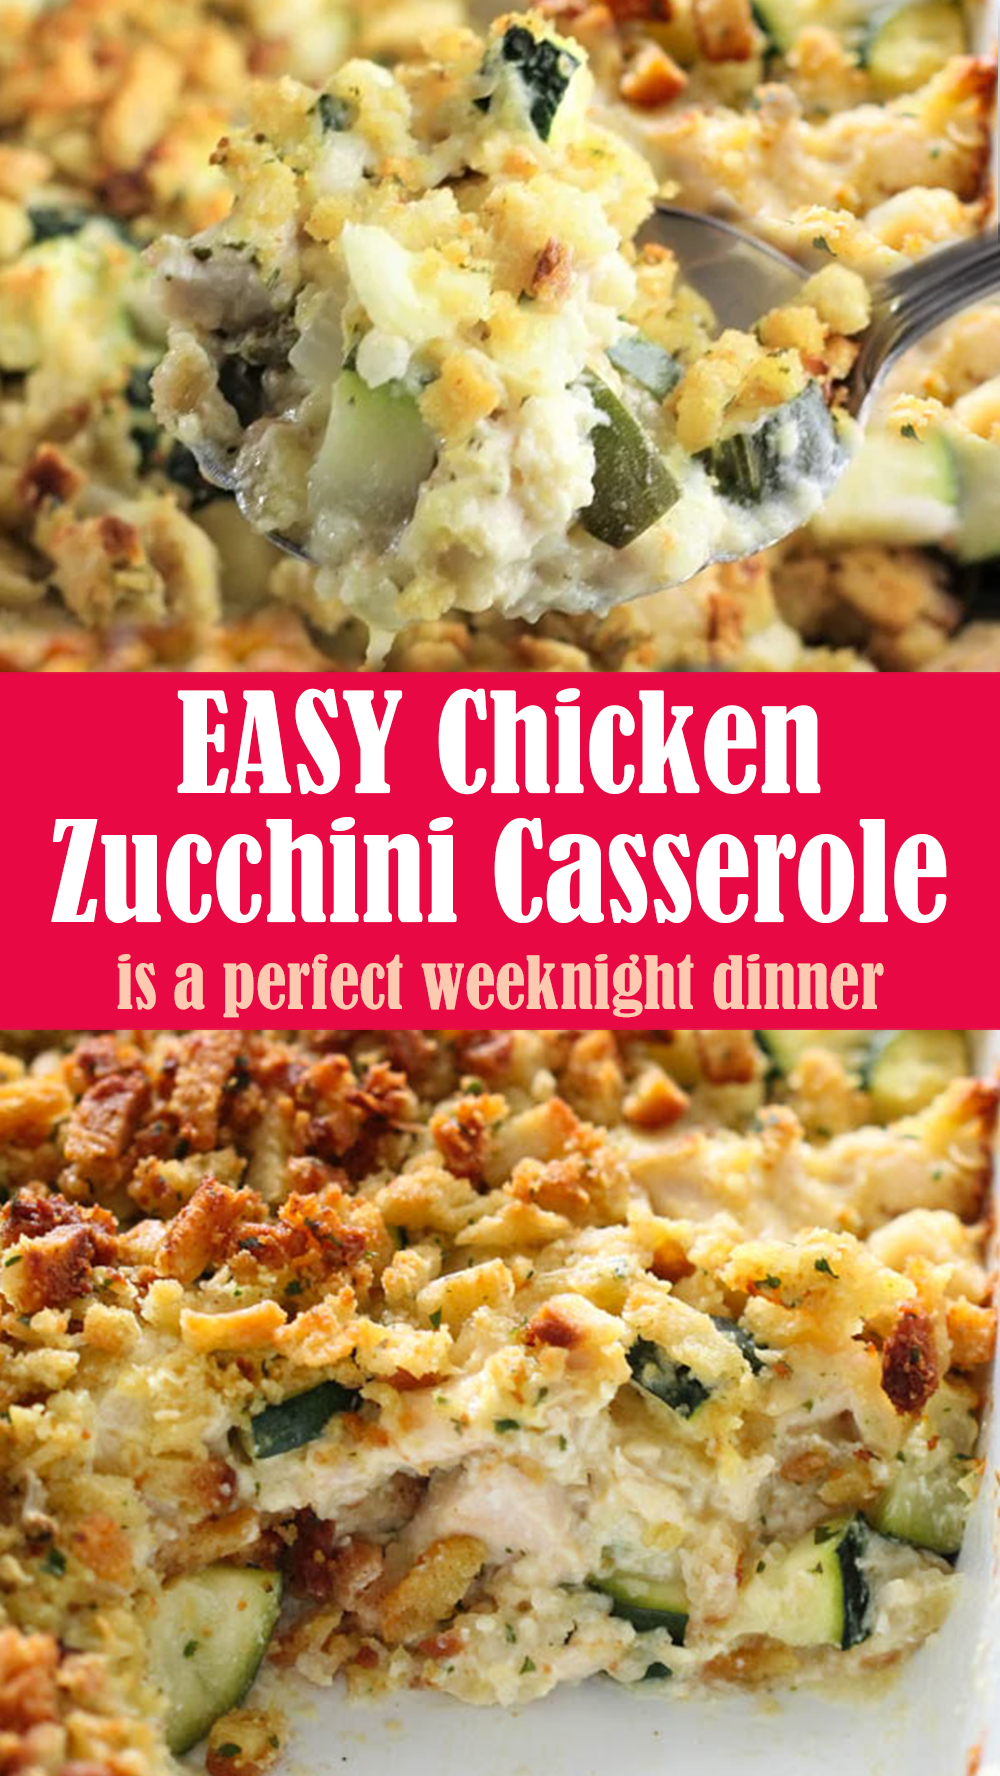 EASY Chicken Zucchini Casserole Recipe